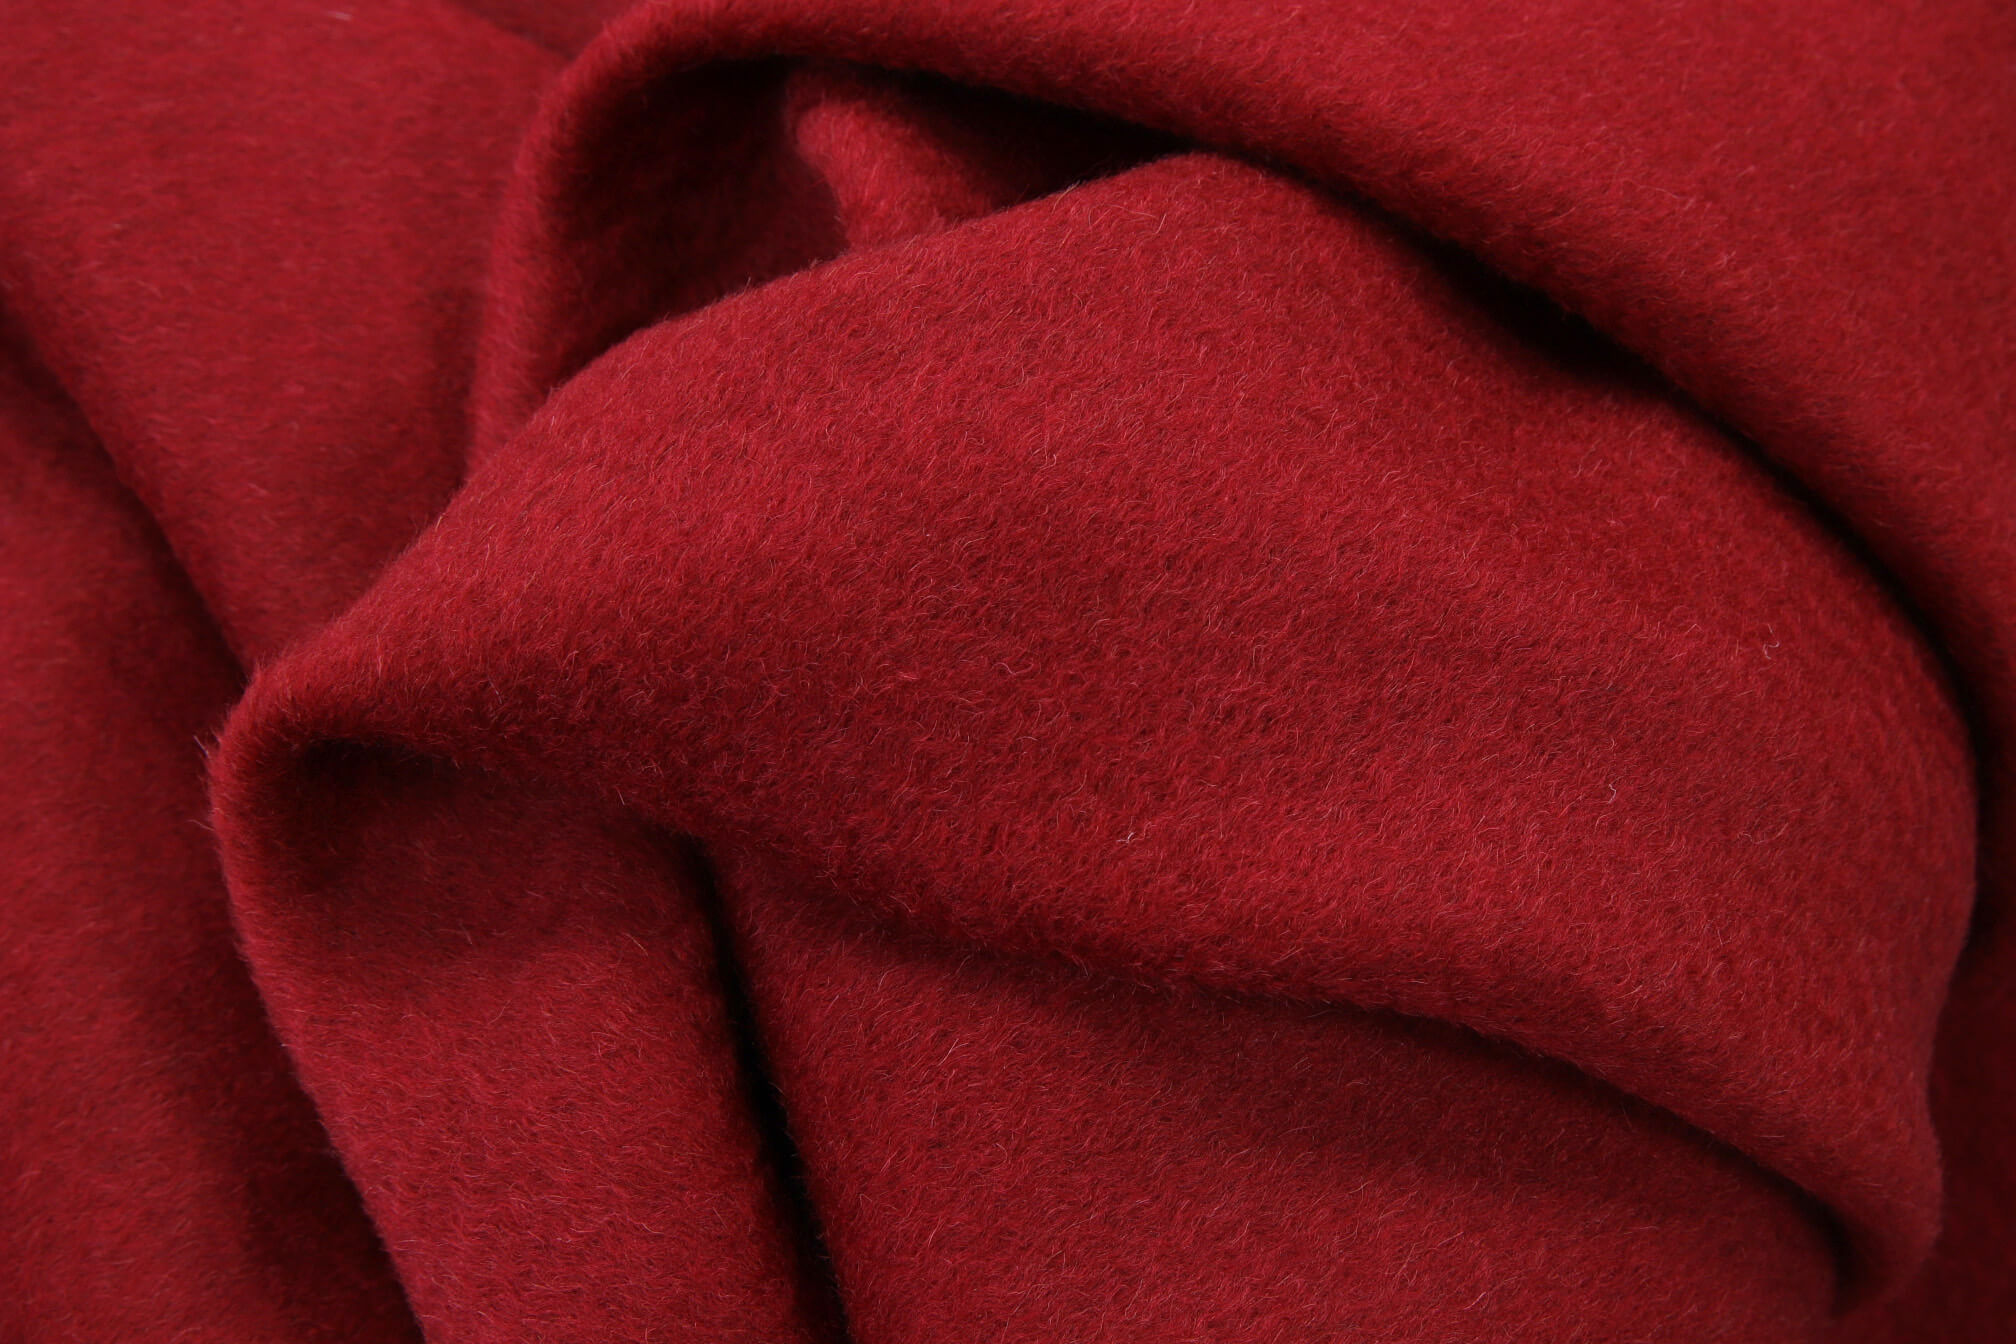 Пальтовая ткань с волной Max Mara ОТРЕЗЫ СПЕЦЦЕНА, цвет Красный, фото 1